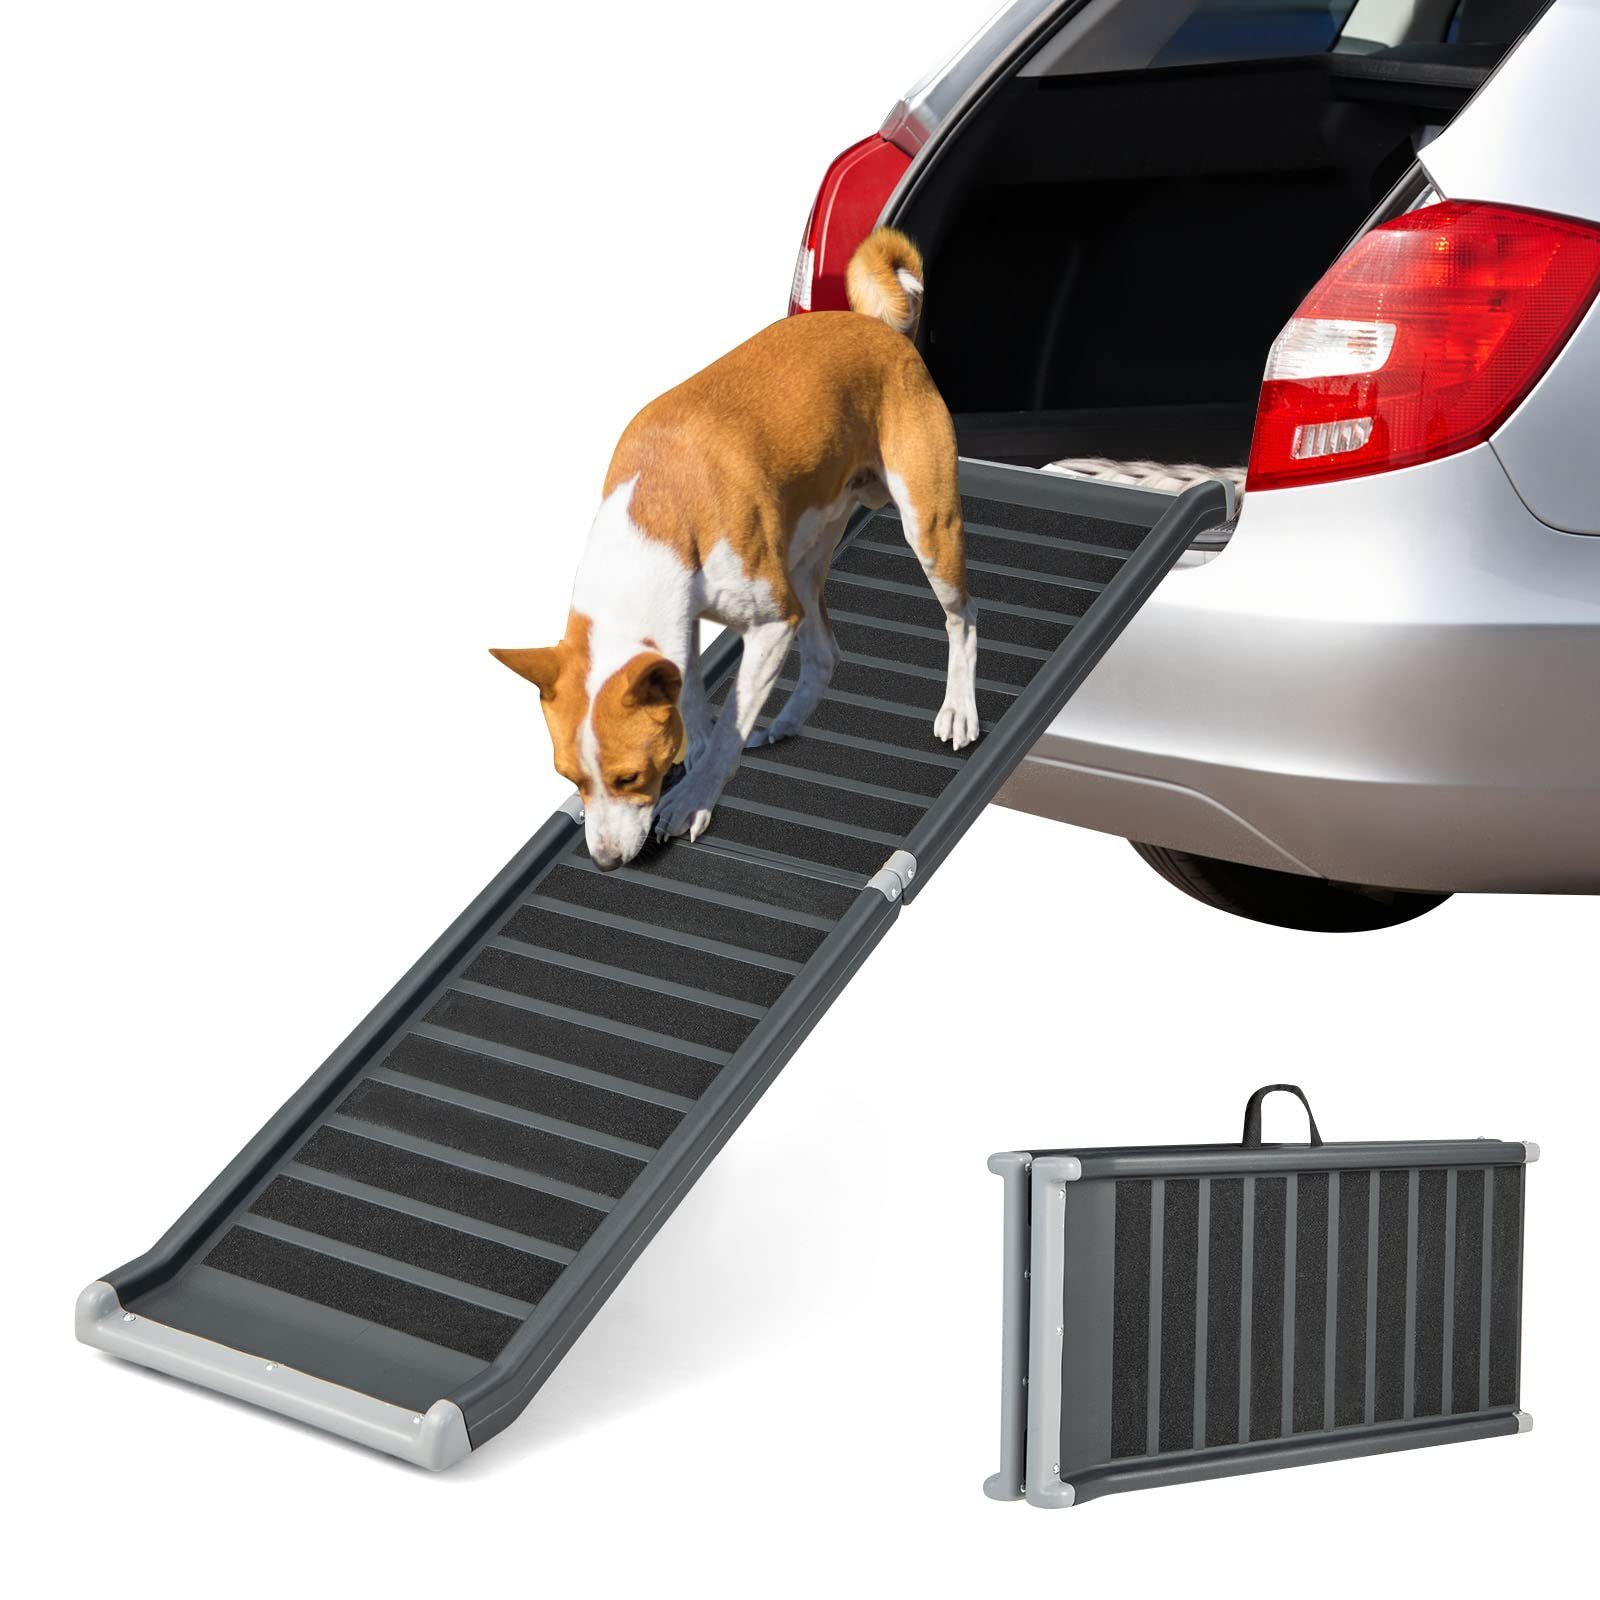 Hunderampe Hundetreppe Auto Kofferraum Treppen Rampe Einstiegshilfe für  Hunde Klappbar Aluminium Auswahl Längen 213 cm Petigi